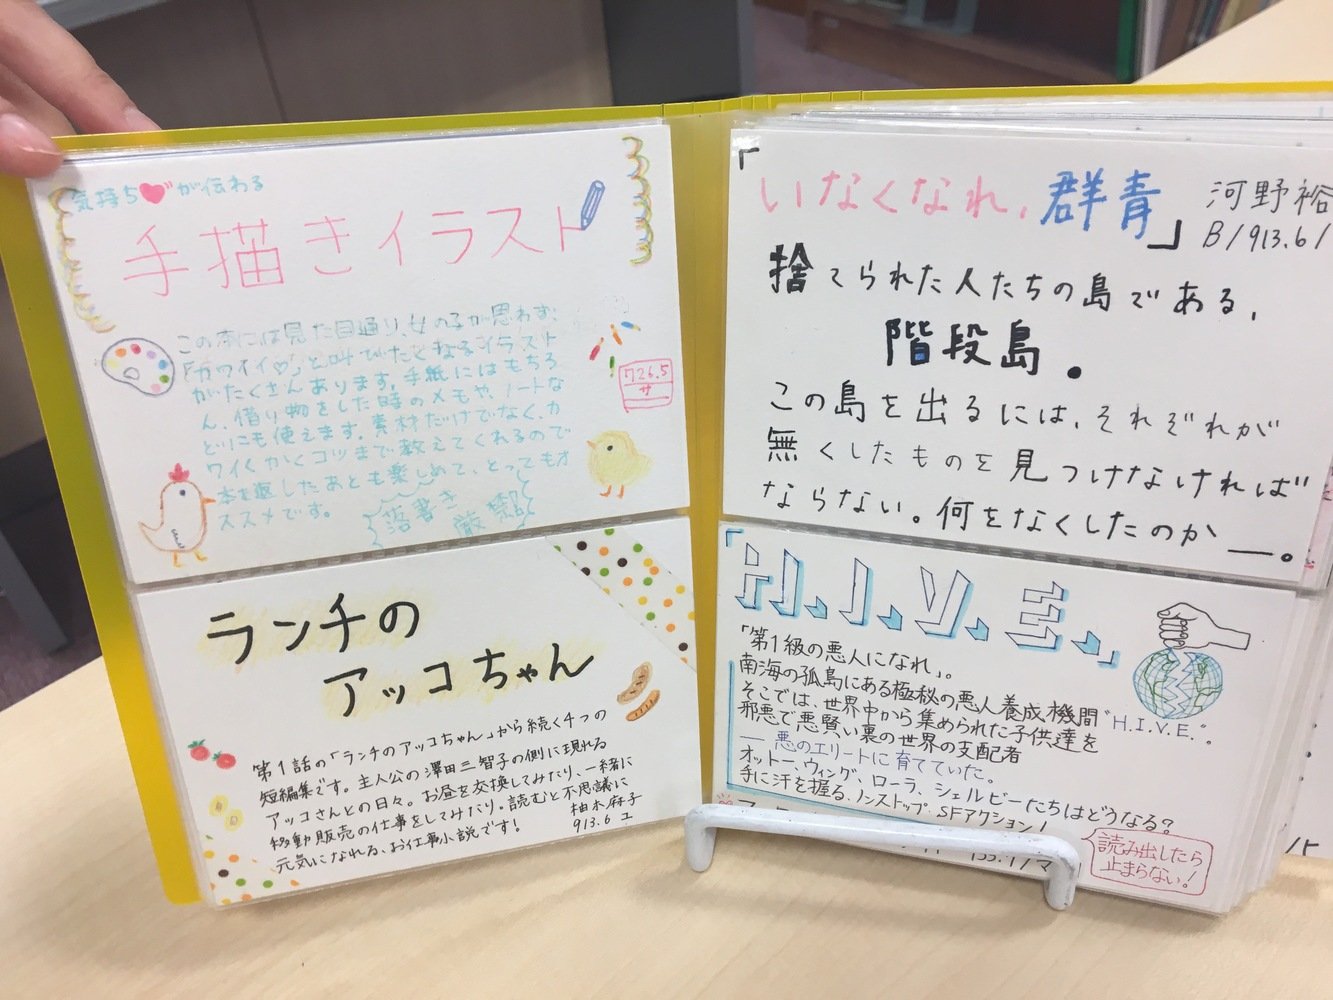 日本女子大学附属中学校　図書館司書インタビュー「生徒それぞれが意味を持って図書室に価値を見出してくれるように整えていければなと思っています」30